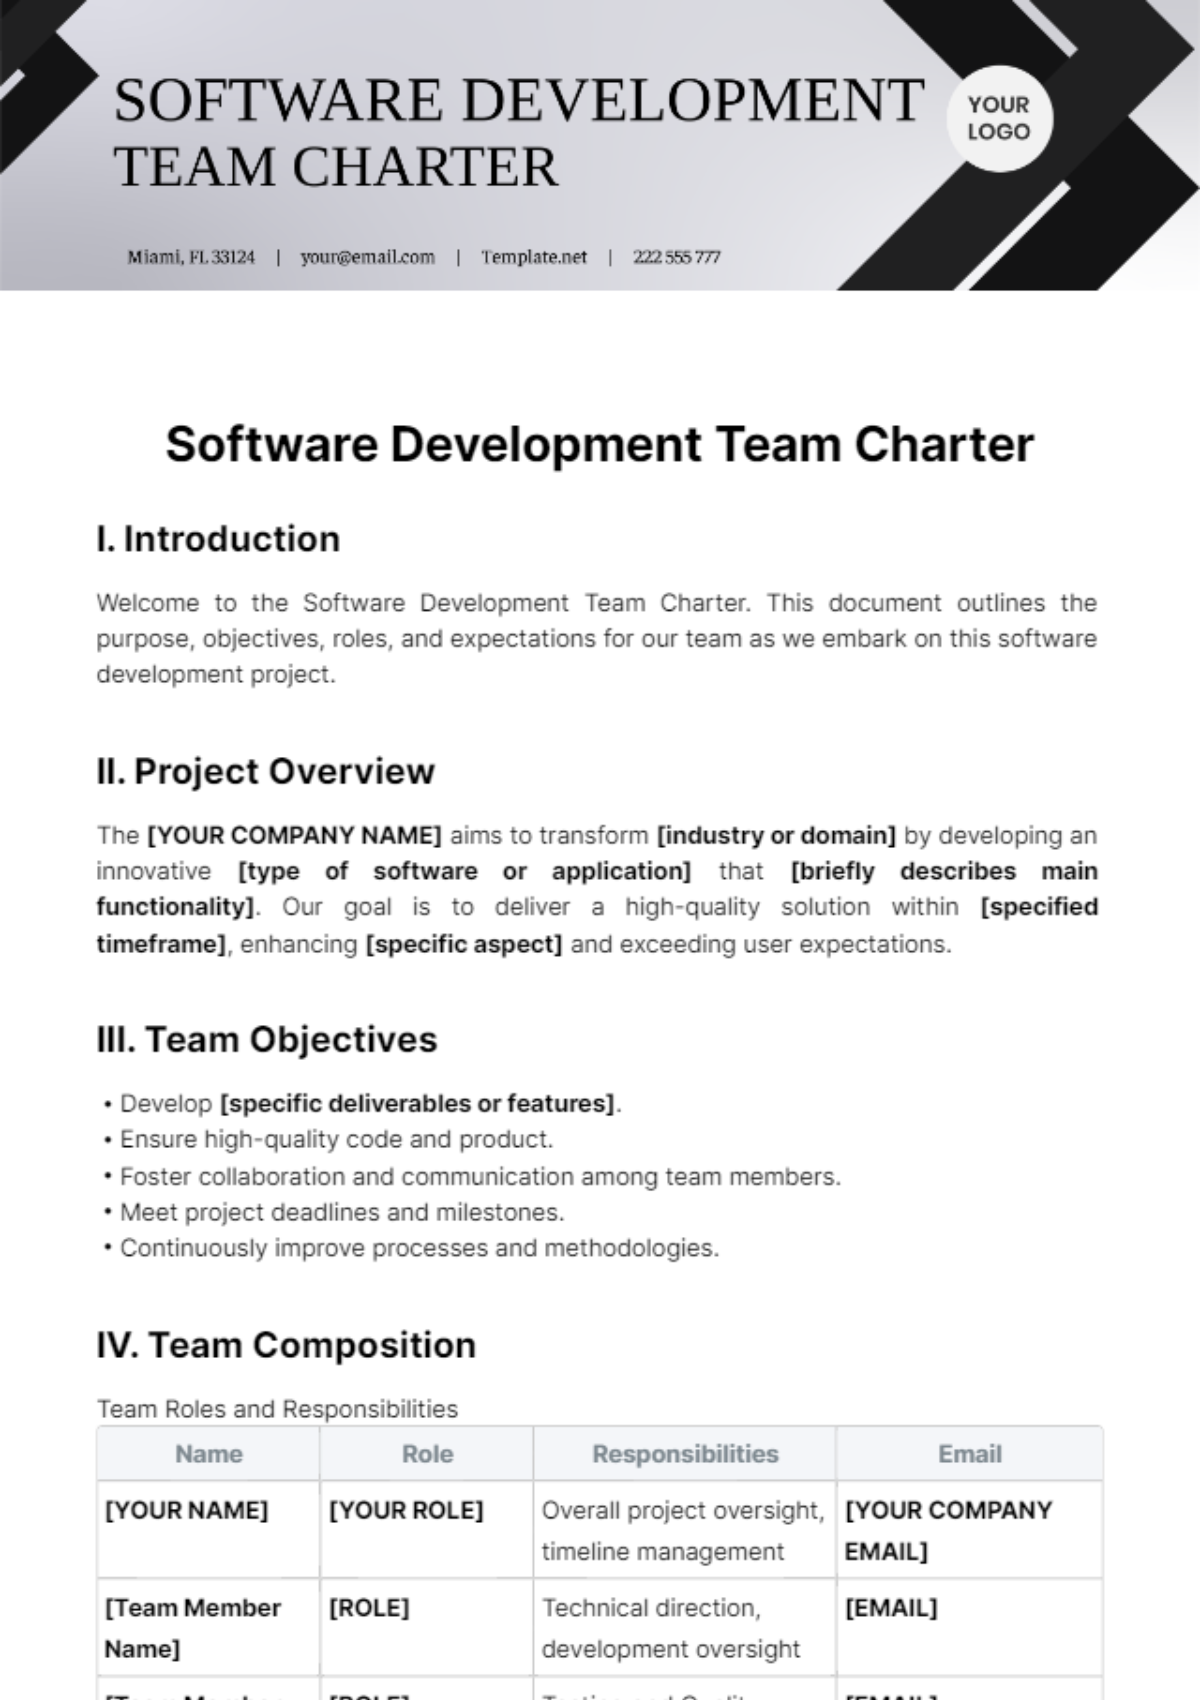 Software Development Team Charter Template